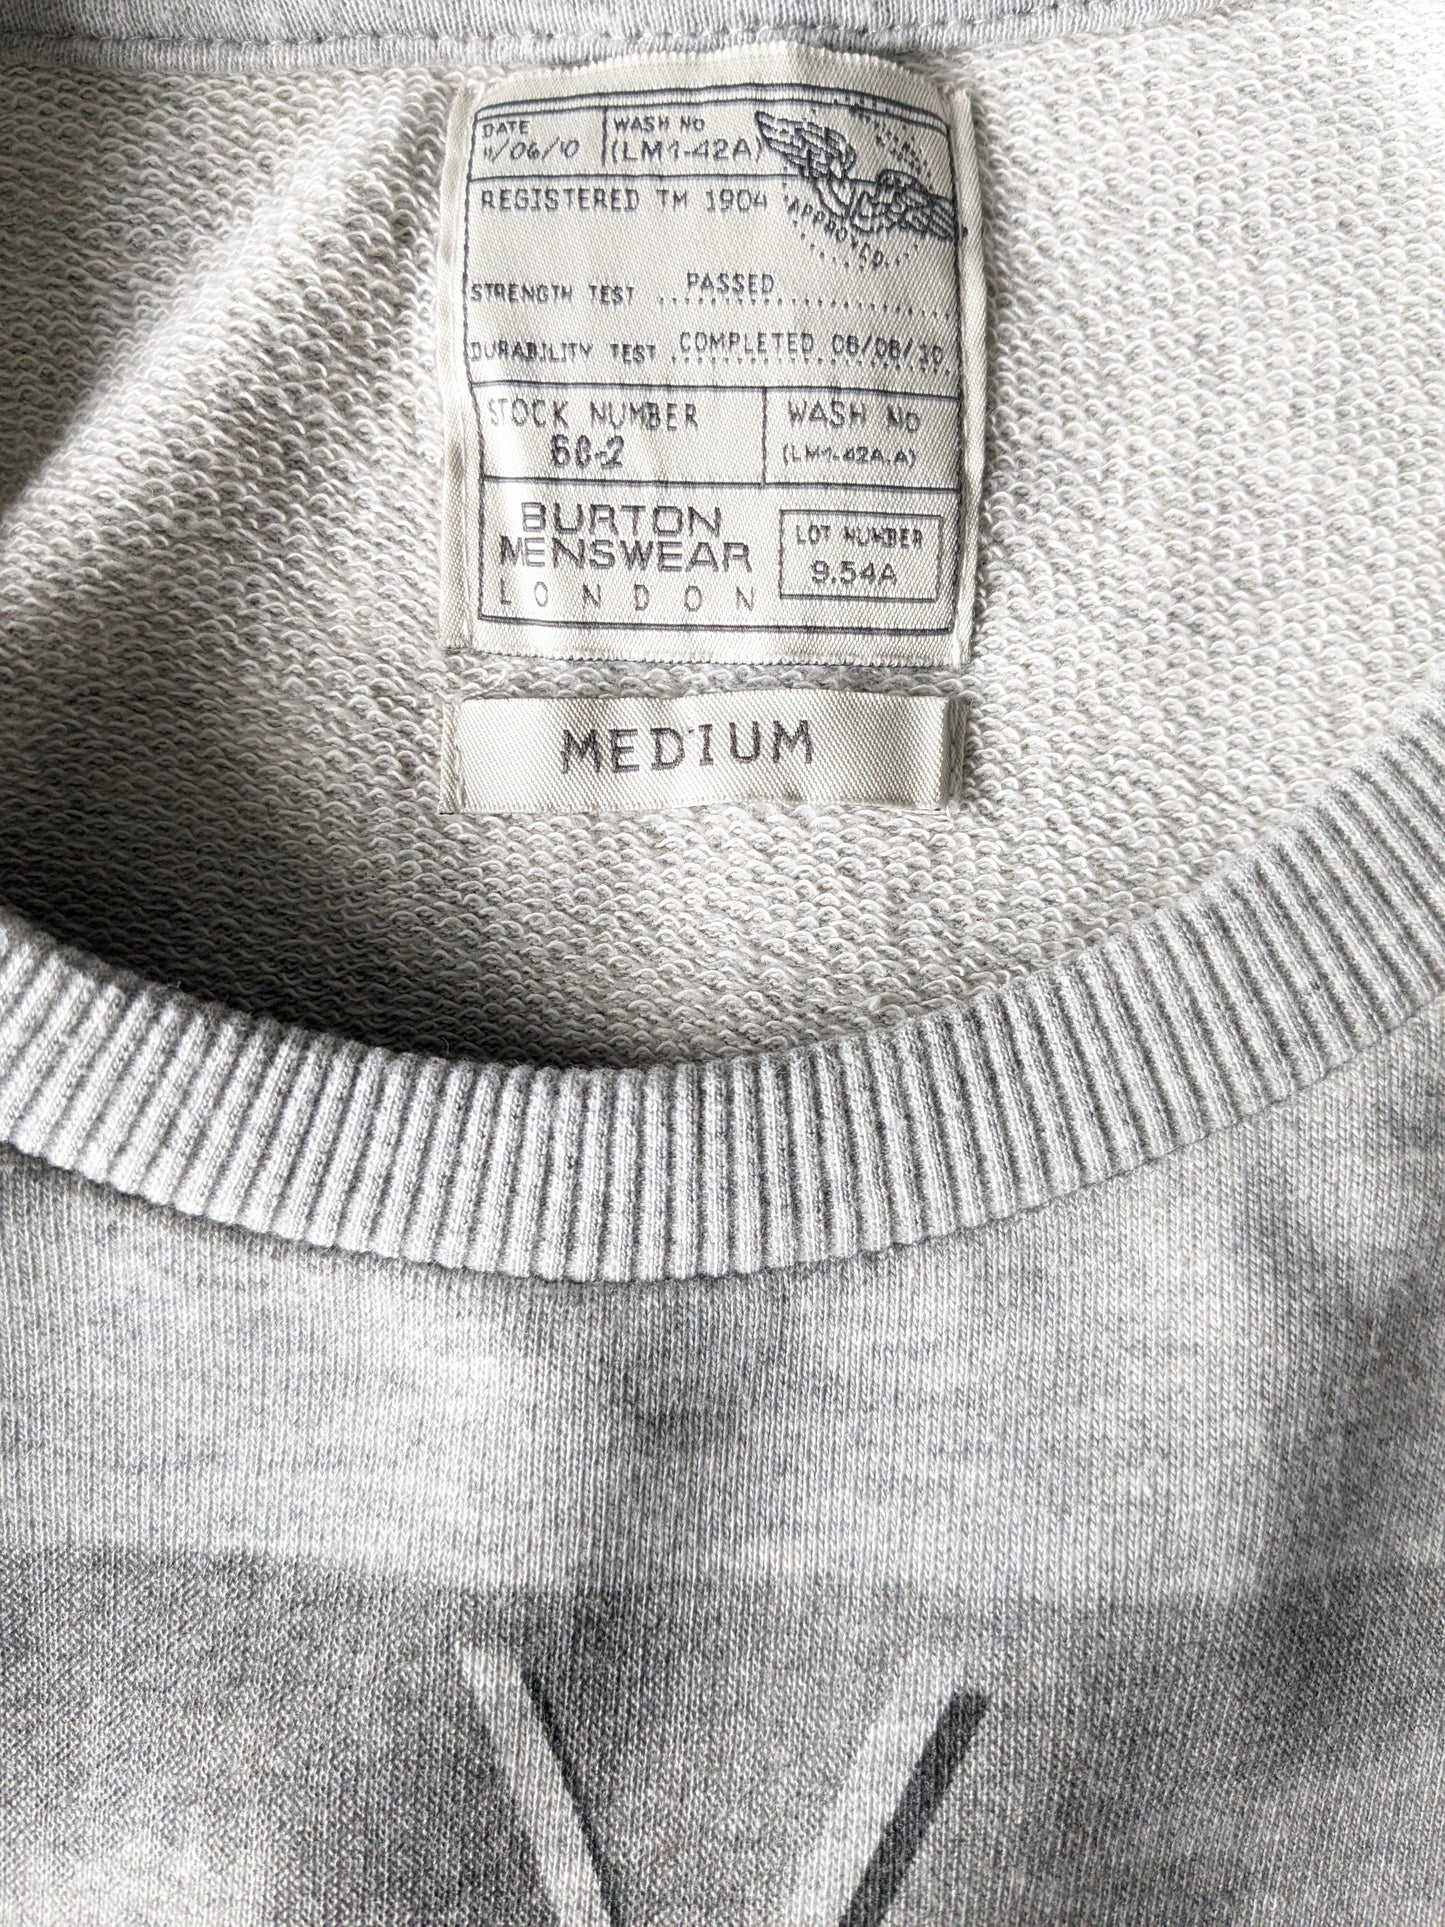 Burton London Menswear Casual Sweater. Gray mélangé. Taille M.